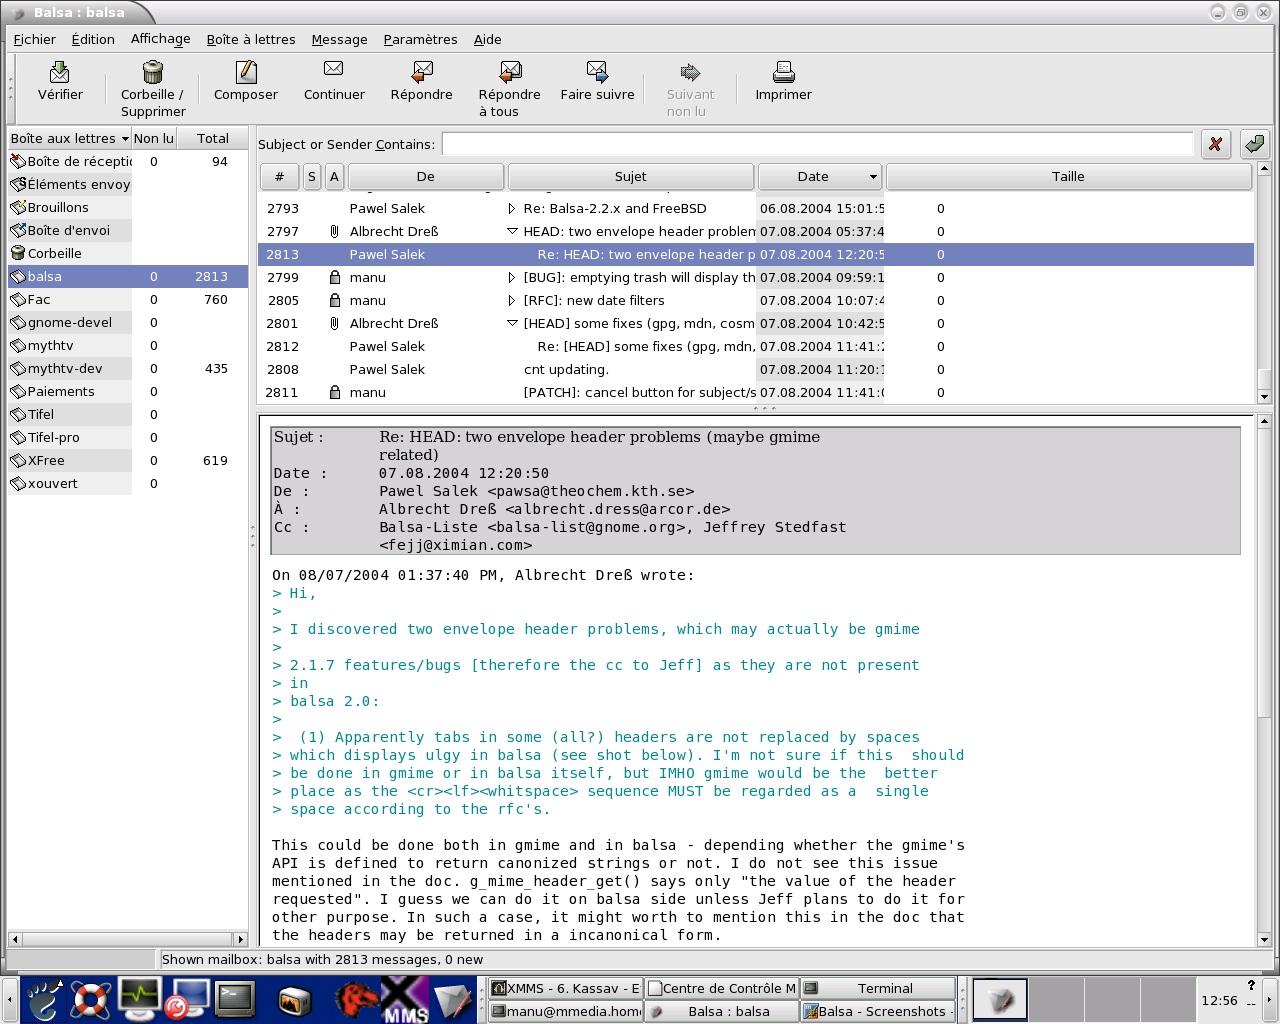 Balsa egy nyílt forráskódú e-mail ügyfél FreeBSD számára, és a C programozási nyelven íródott.